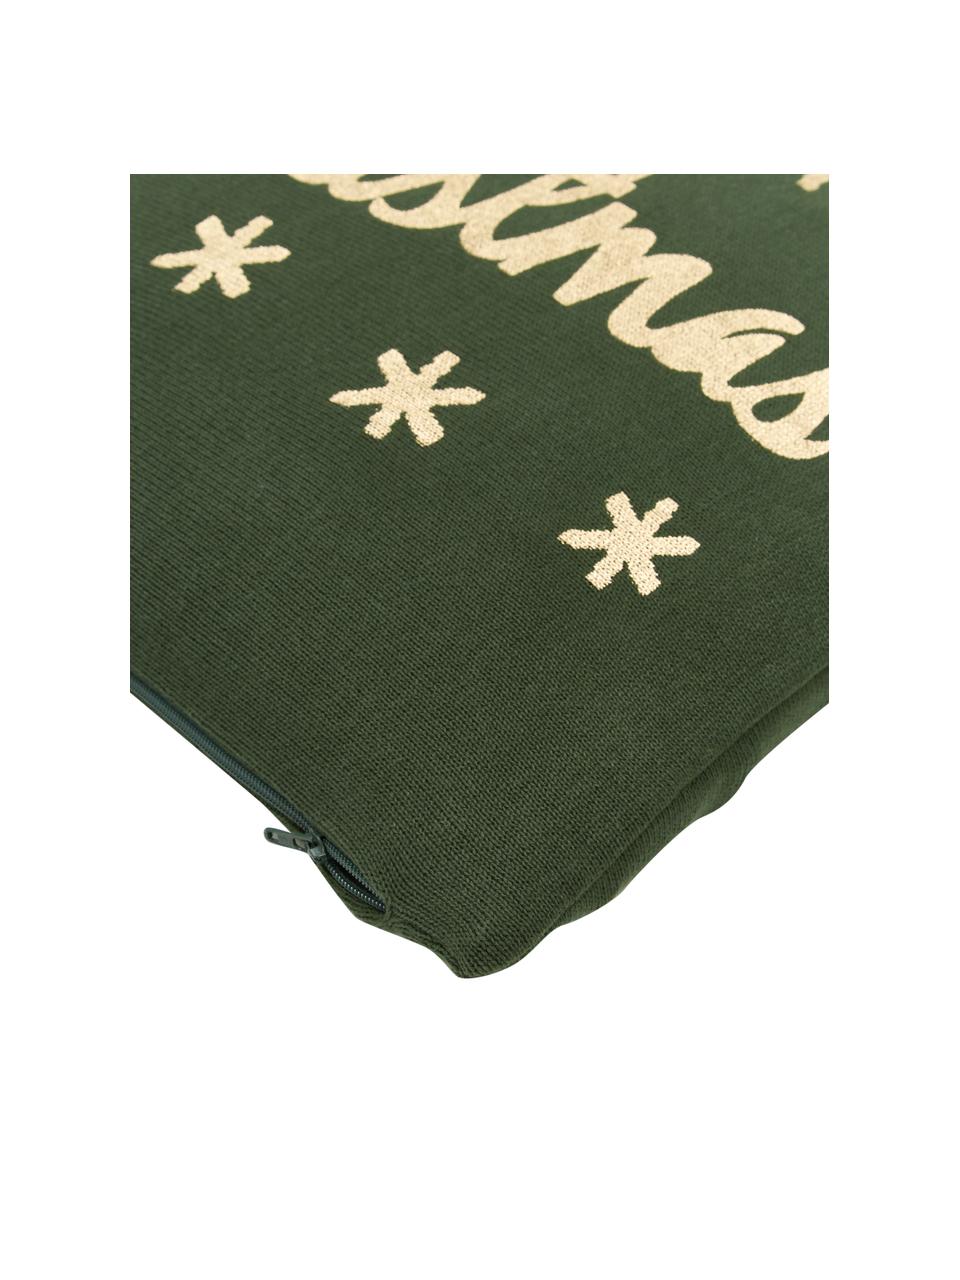 Gebreide kussenhoes Christmas in groen/goudkleur met opschrift, 100% katoen, Groen, goudkleurig, B 40 x L 40 cm